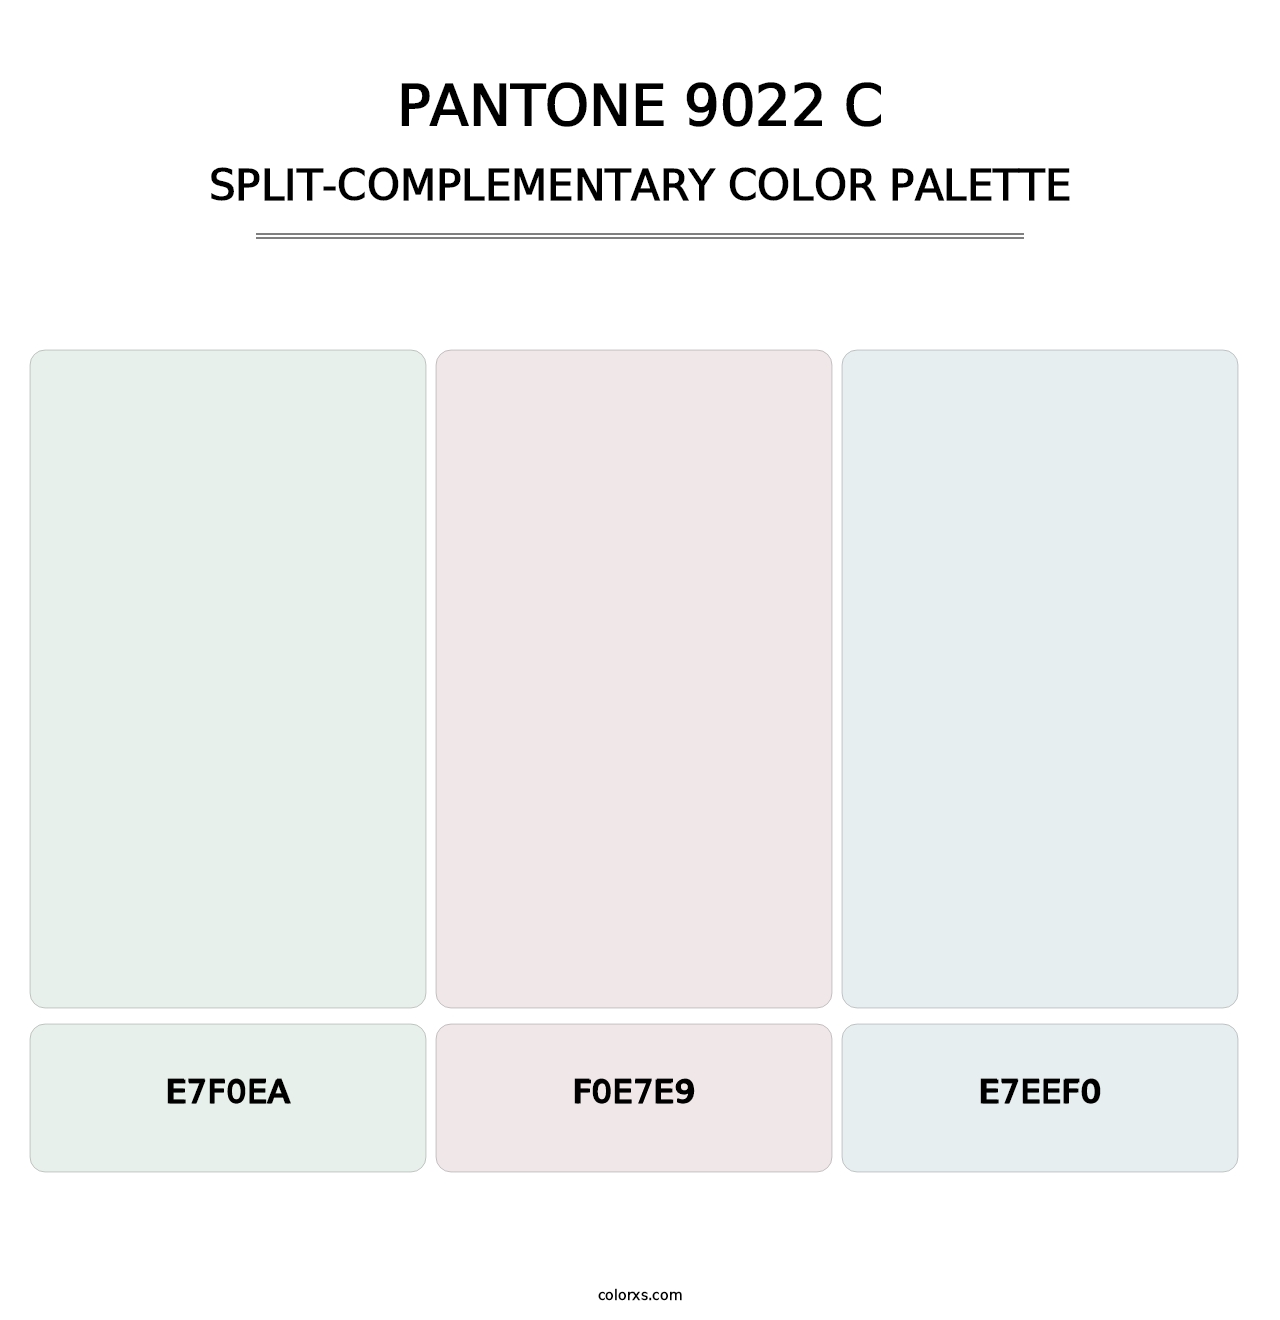 PANTONE 9022 C - Split-Complementary Color Palette